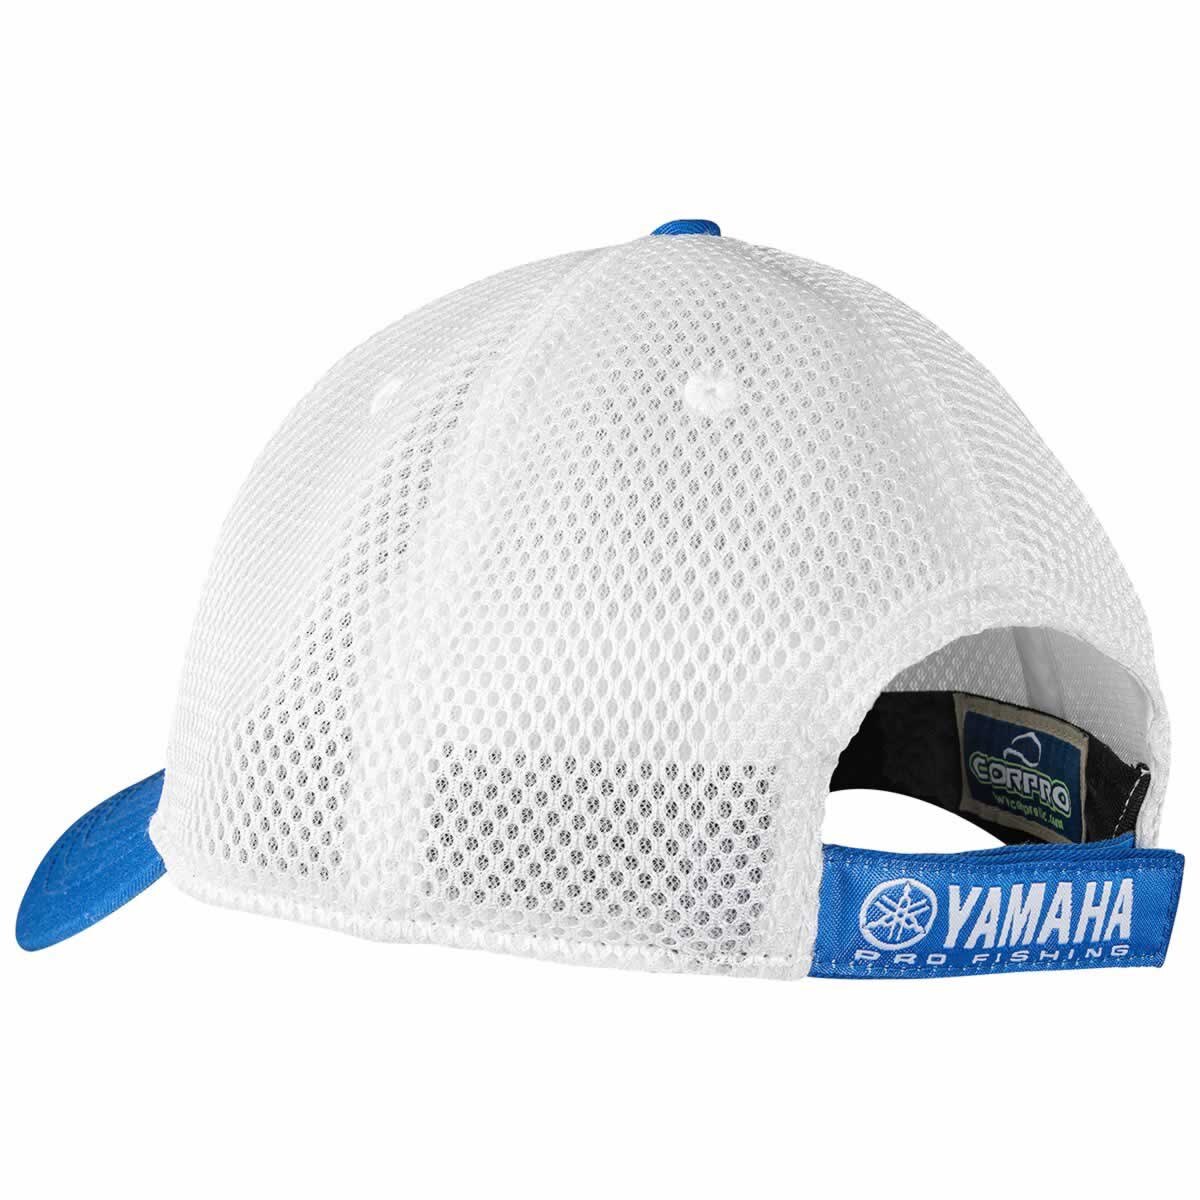 Yamaha Pro Fishing Adjustable Baseball Cap One size blue/white